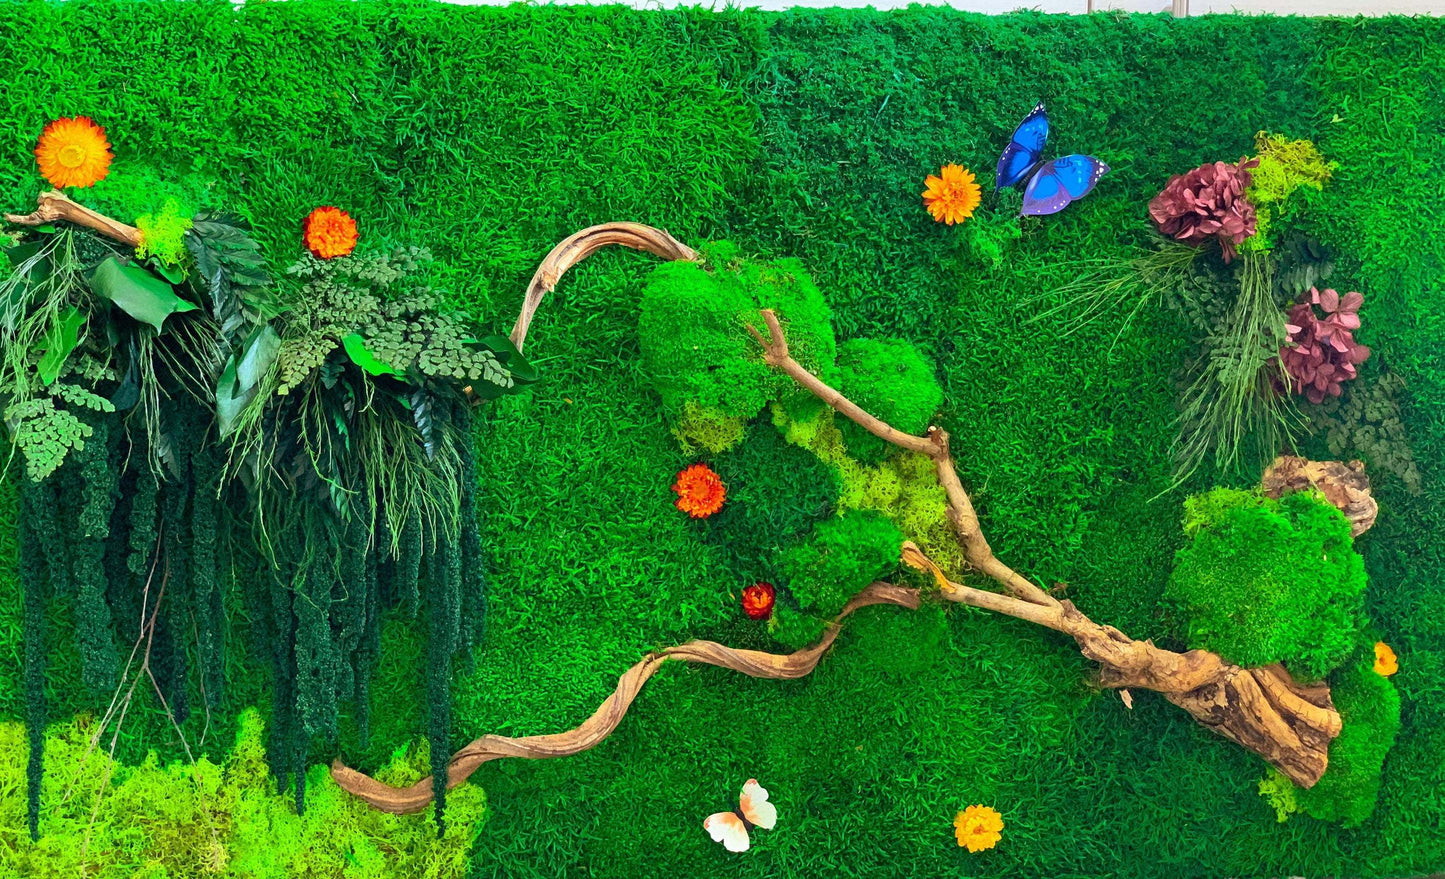 Moss Wall | Preserved Moss art | Living wall art Set RishStudio